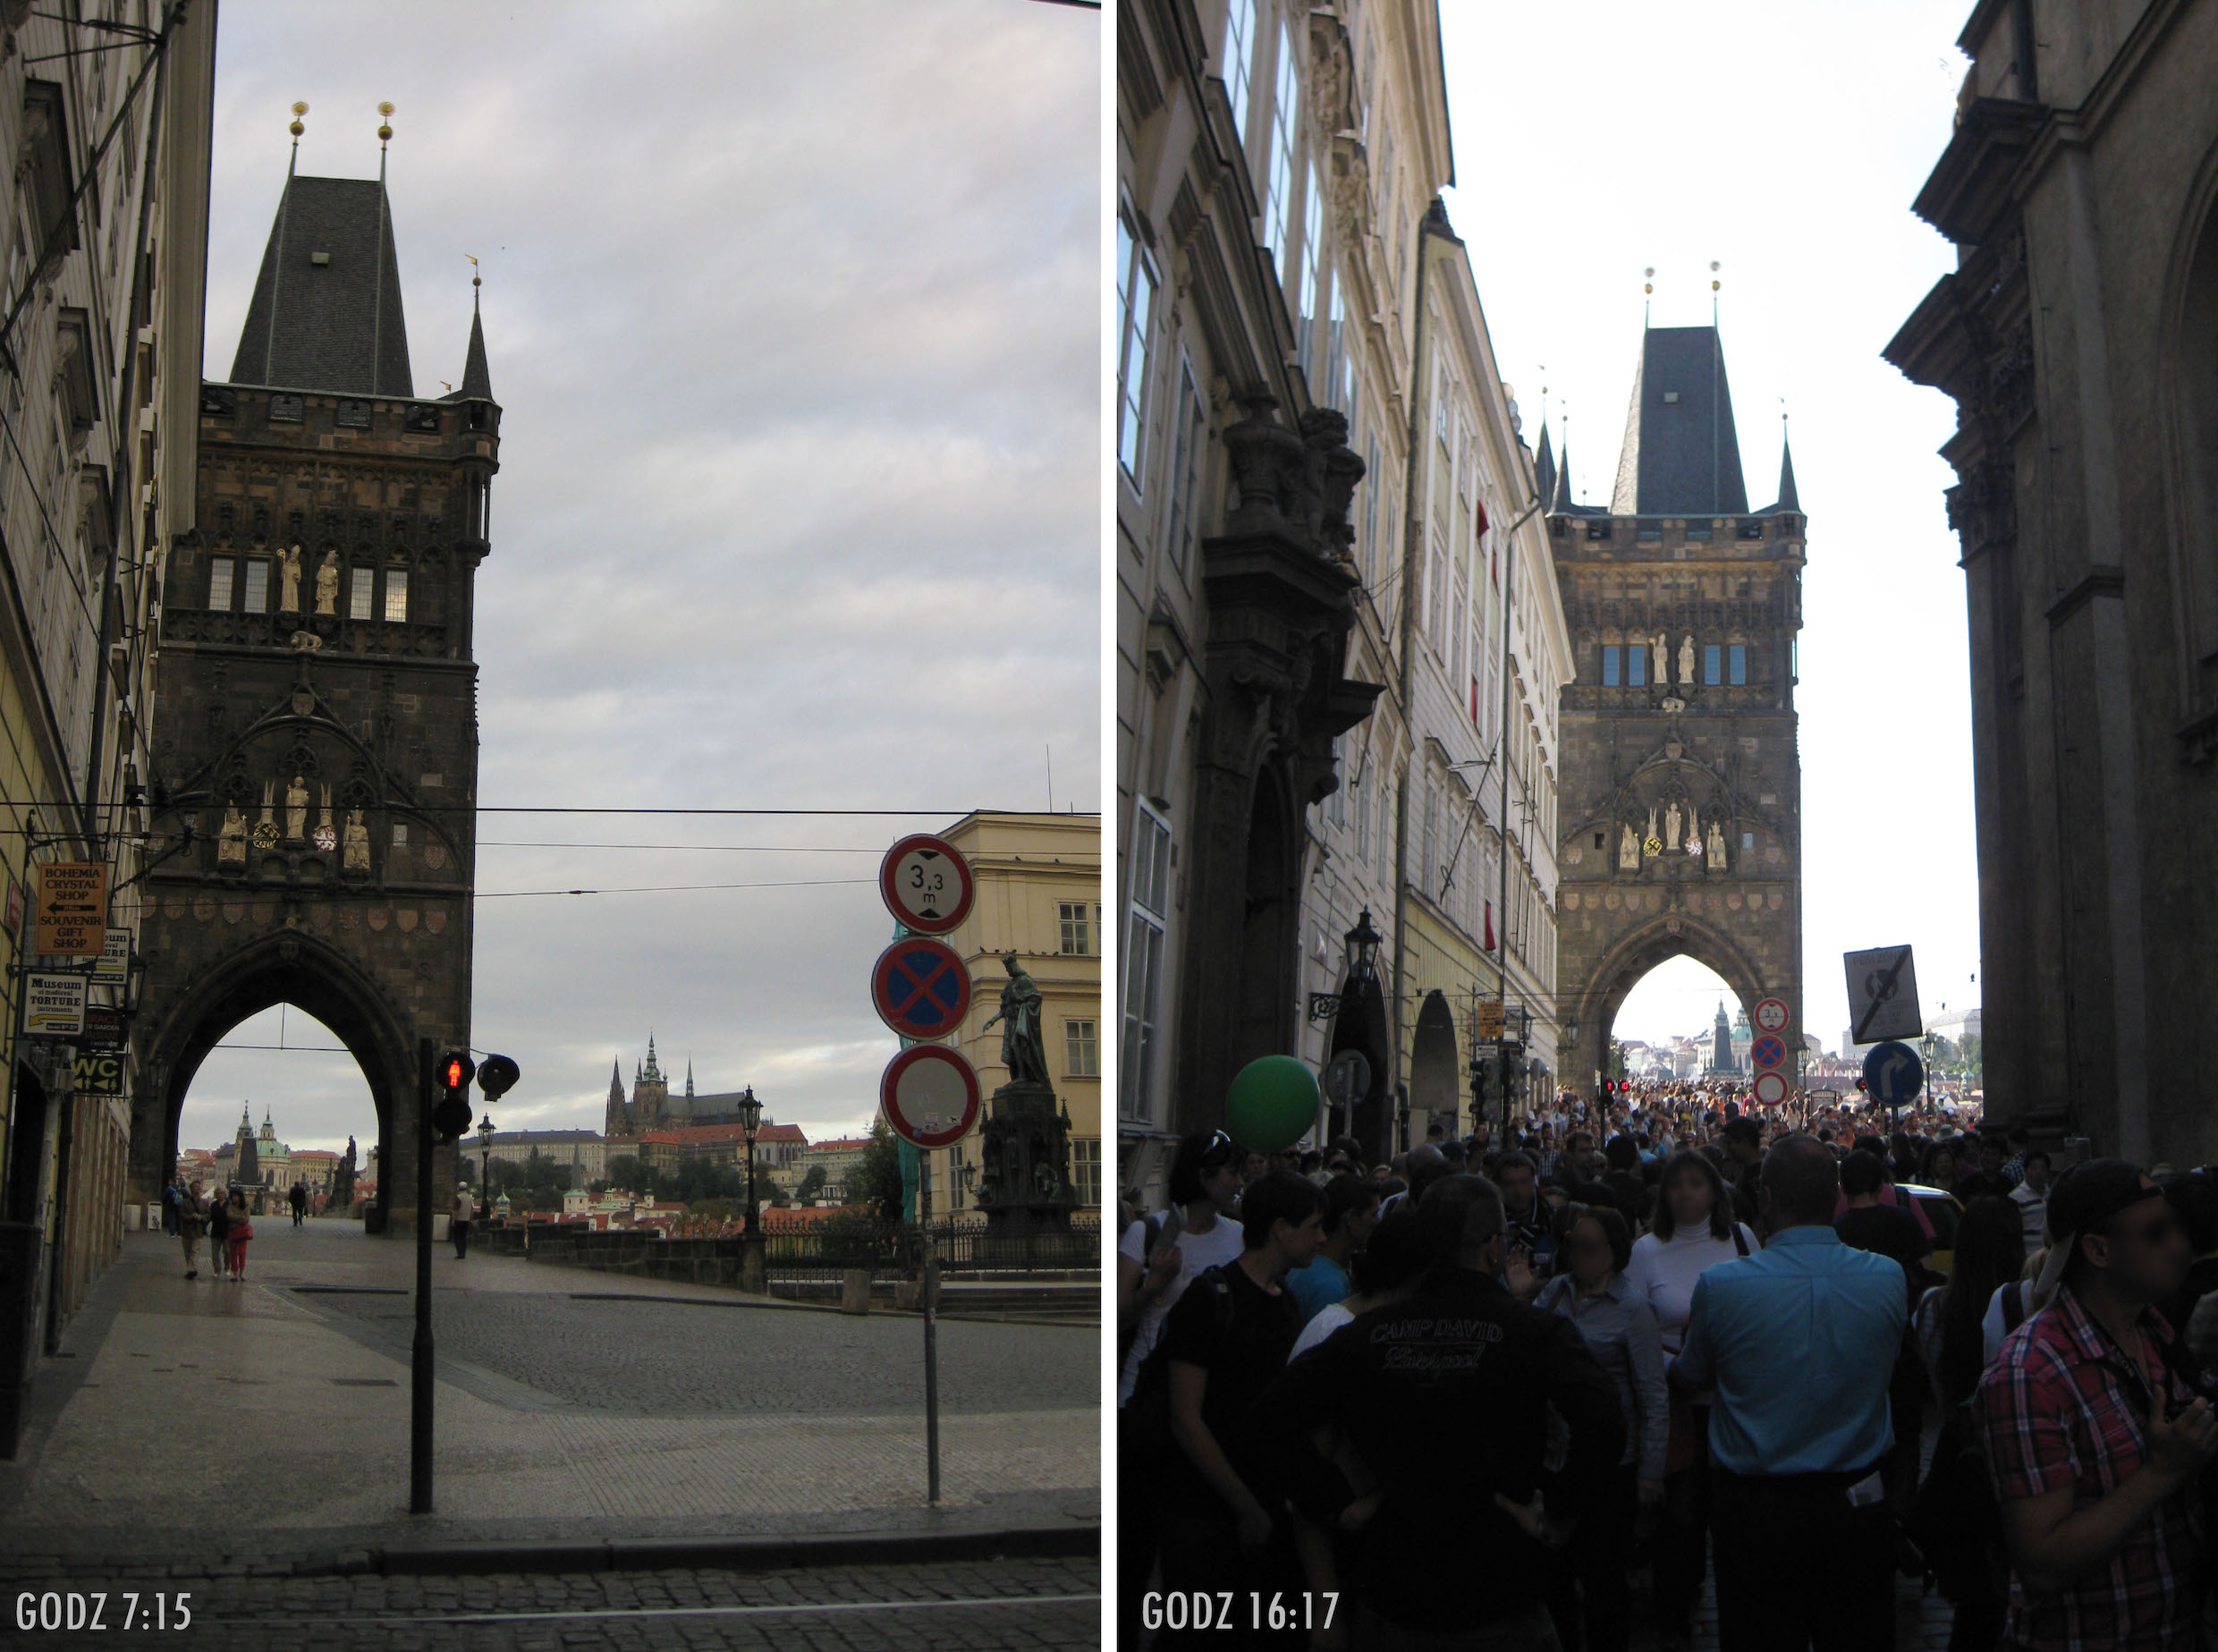 dwa zdjęcia, po lewej widok na Wieżę Staromiejską, w oddali Hradczany, zero ludzi. drugie zdjęcie: praktycznie to samo ujęcie, zdjęcie zrobione po południu, bardzo dużo ludzi